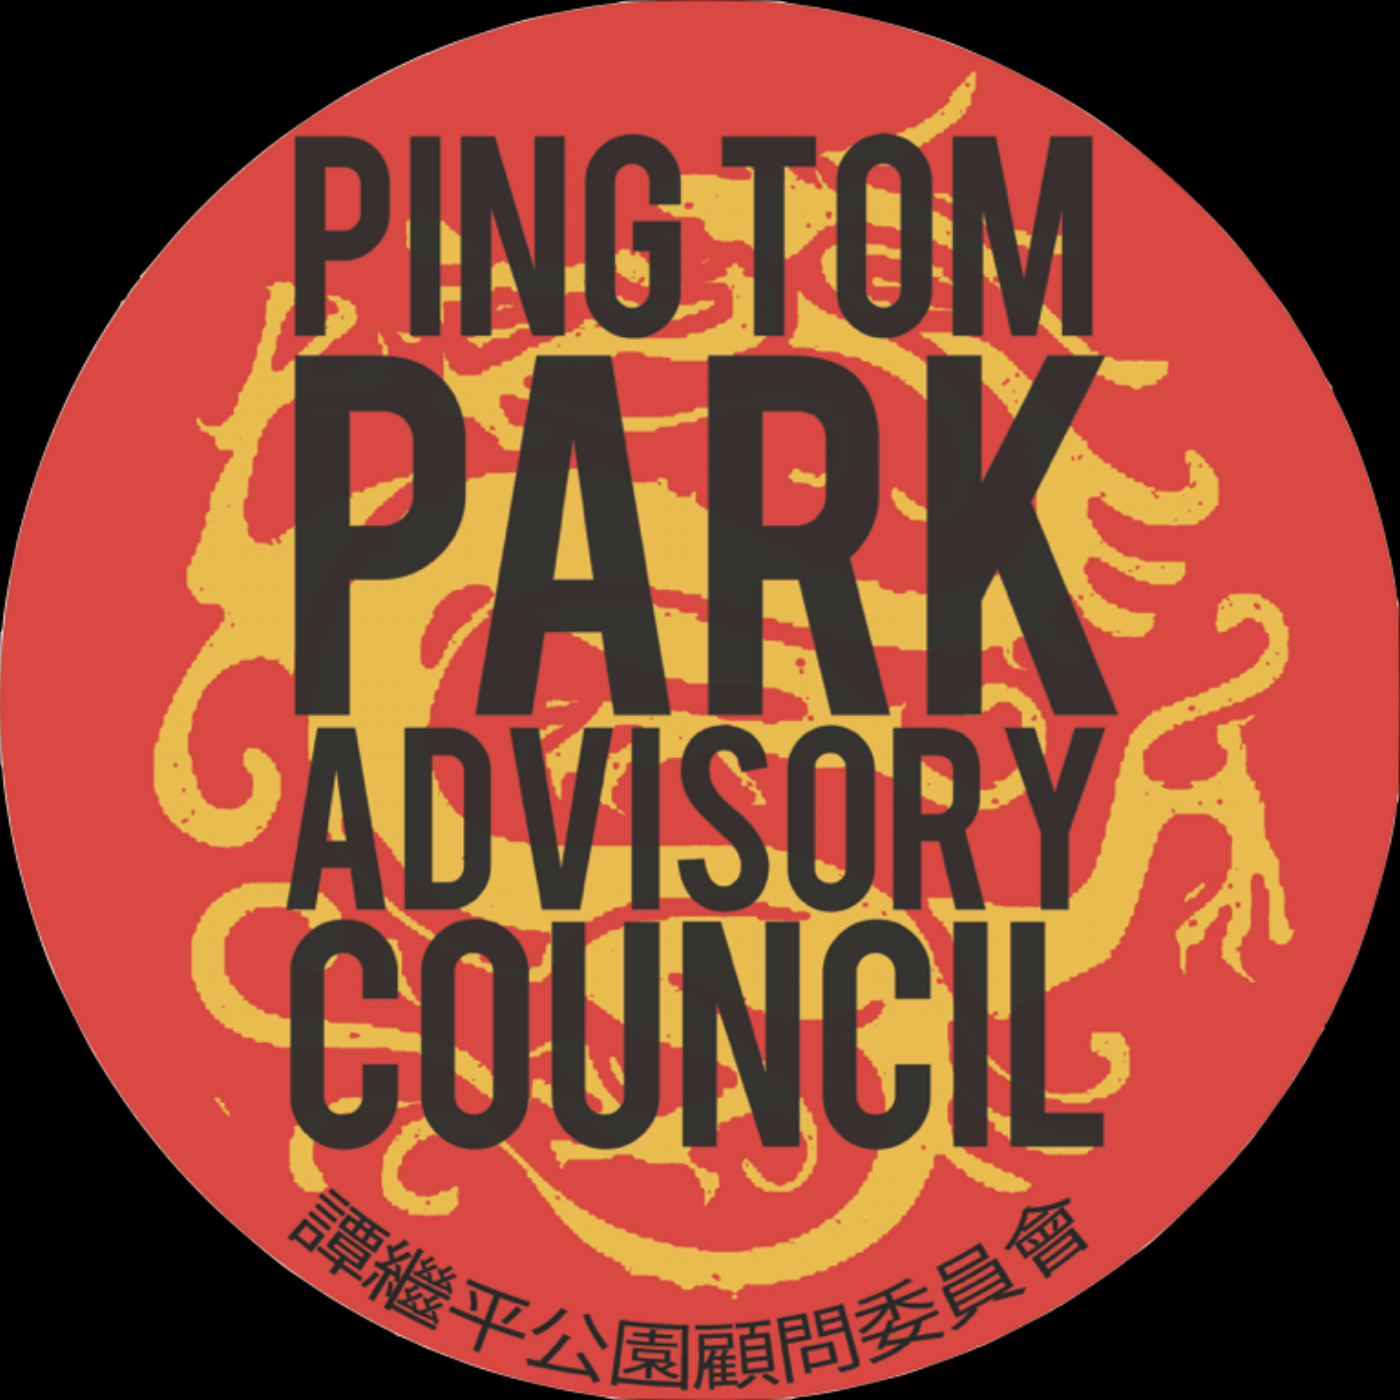 Ping Tom Park Advisory Council